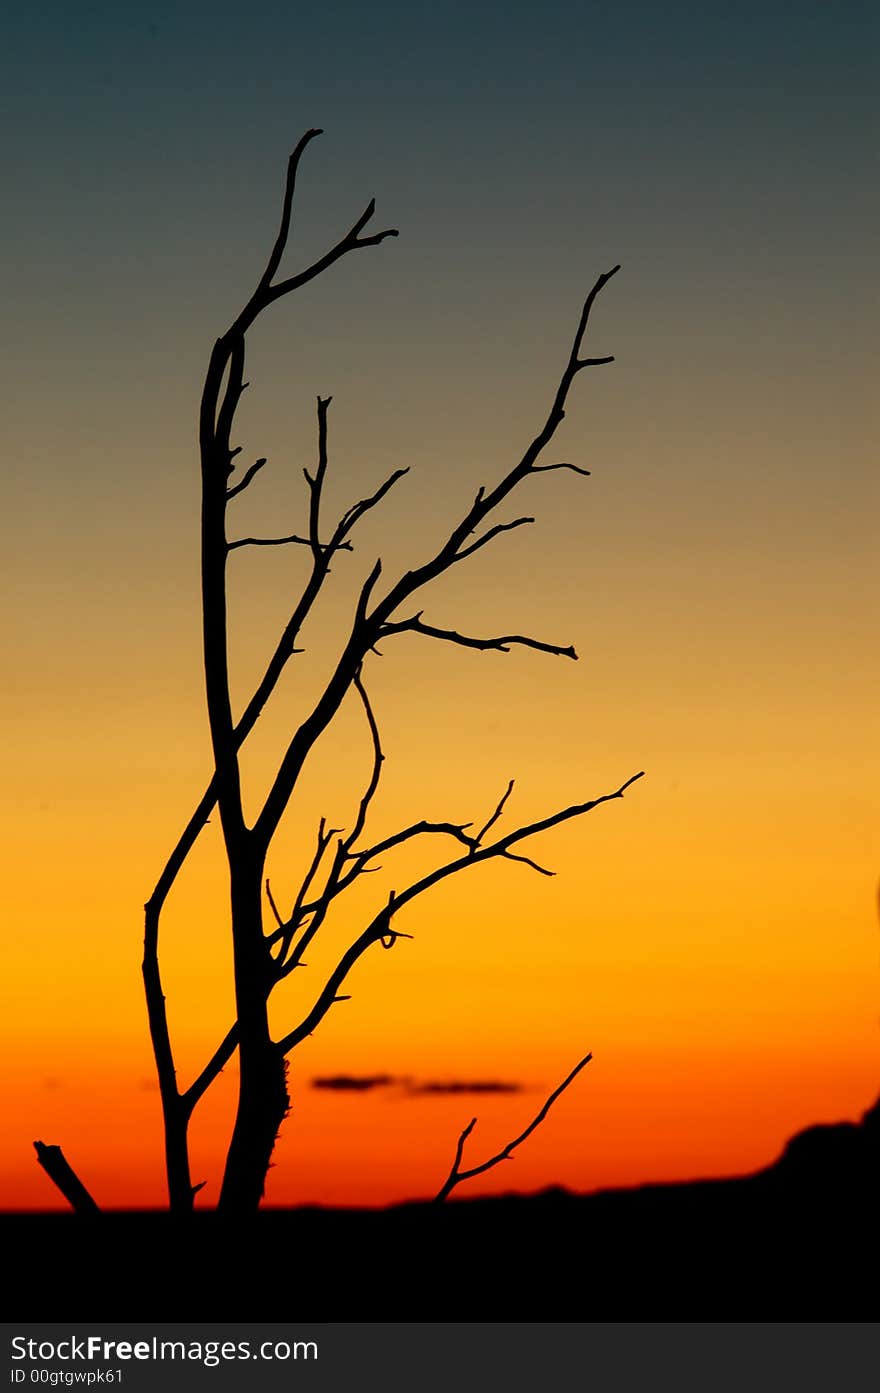 Desert tree silhouette on sunset